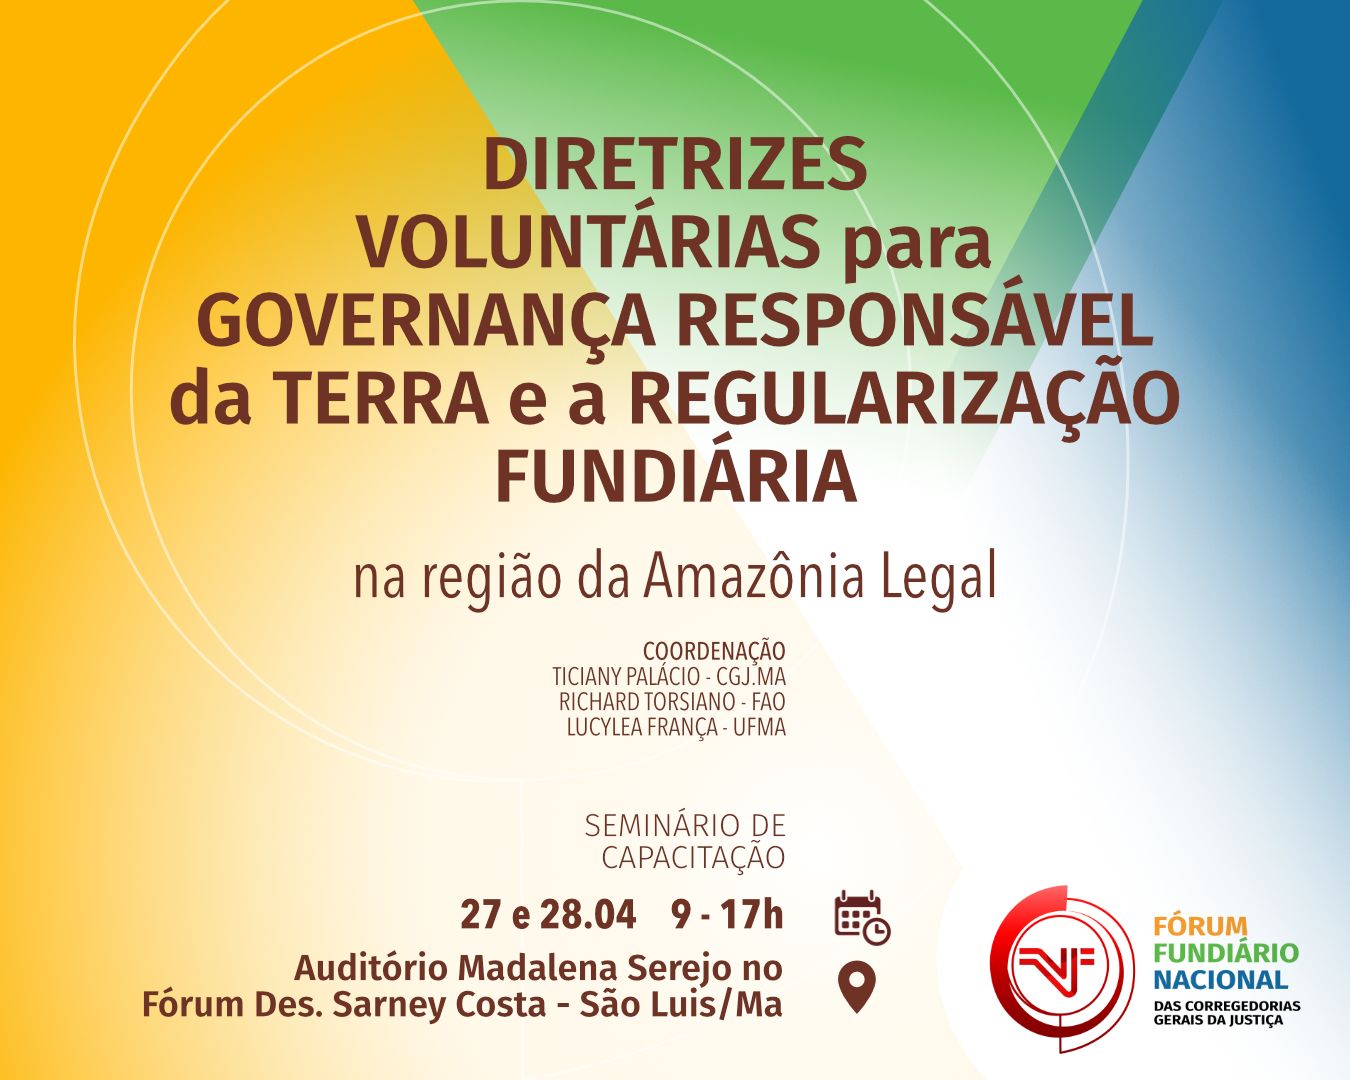 Maranhão sediará evento sobre Governança de Terras e Regularização Fundiária